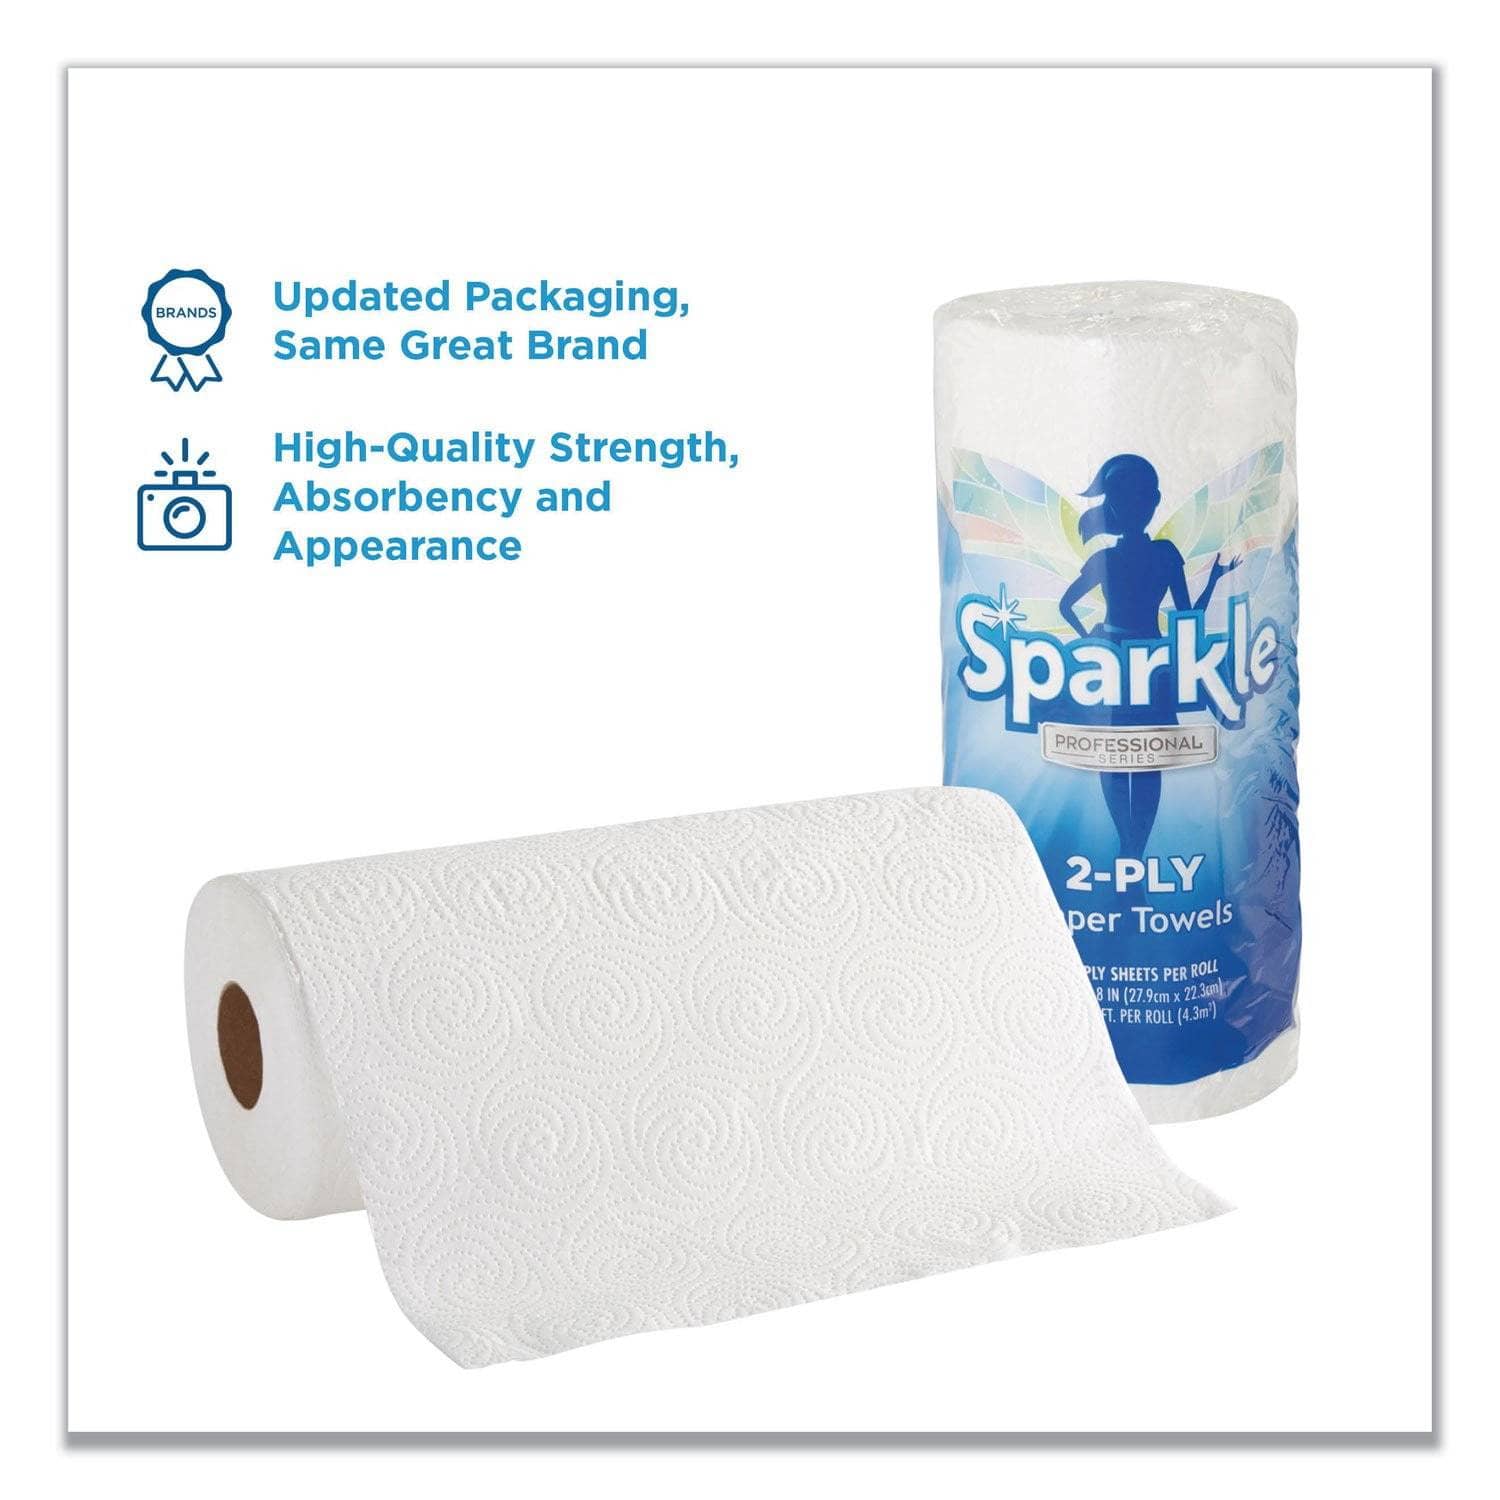 sparkle 2 ply paper towel